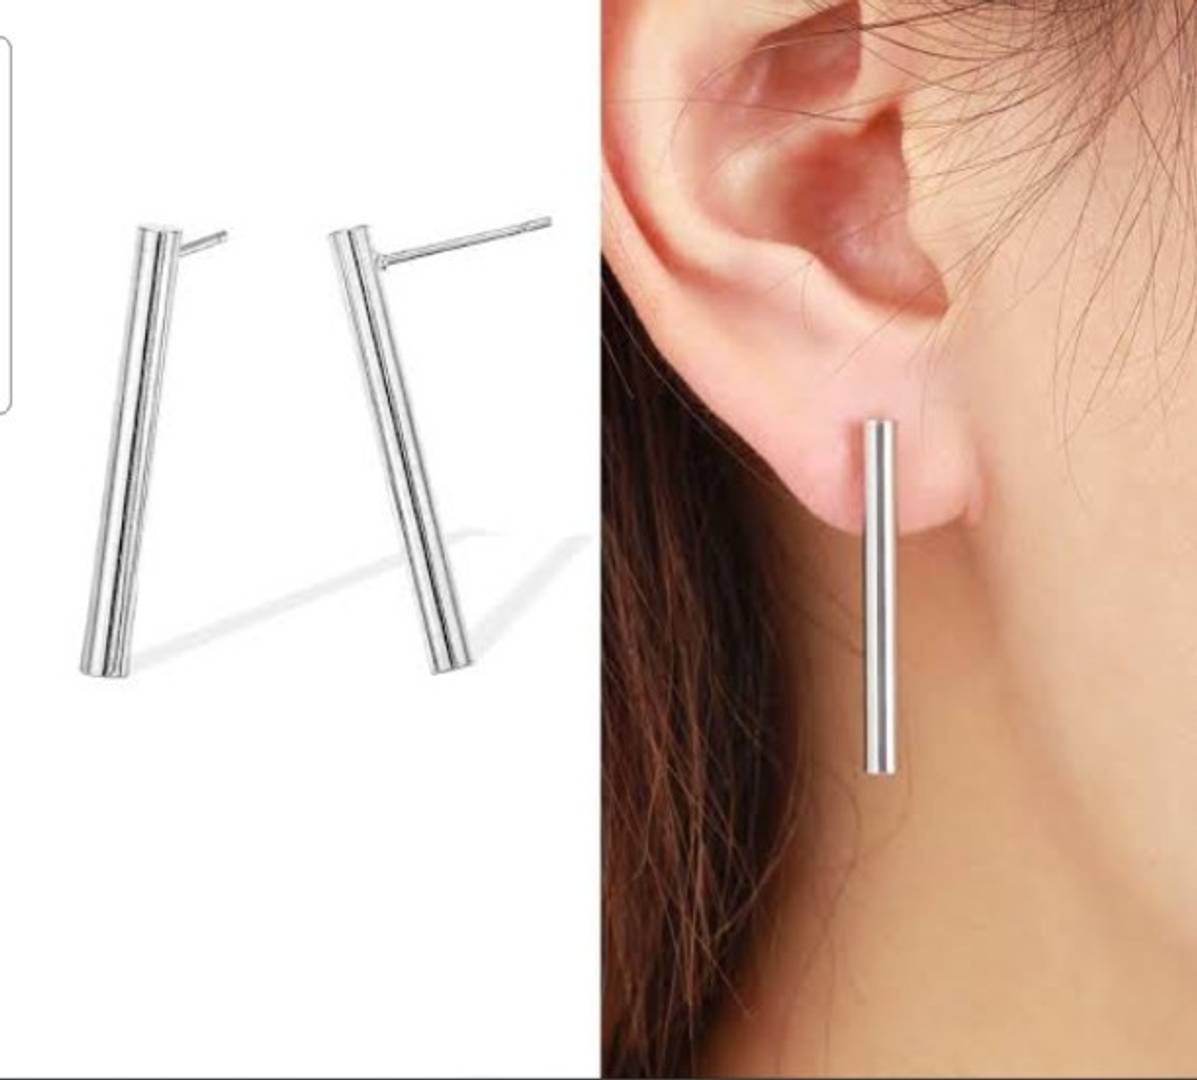 Stick earrings